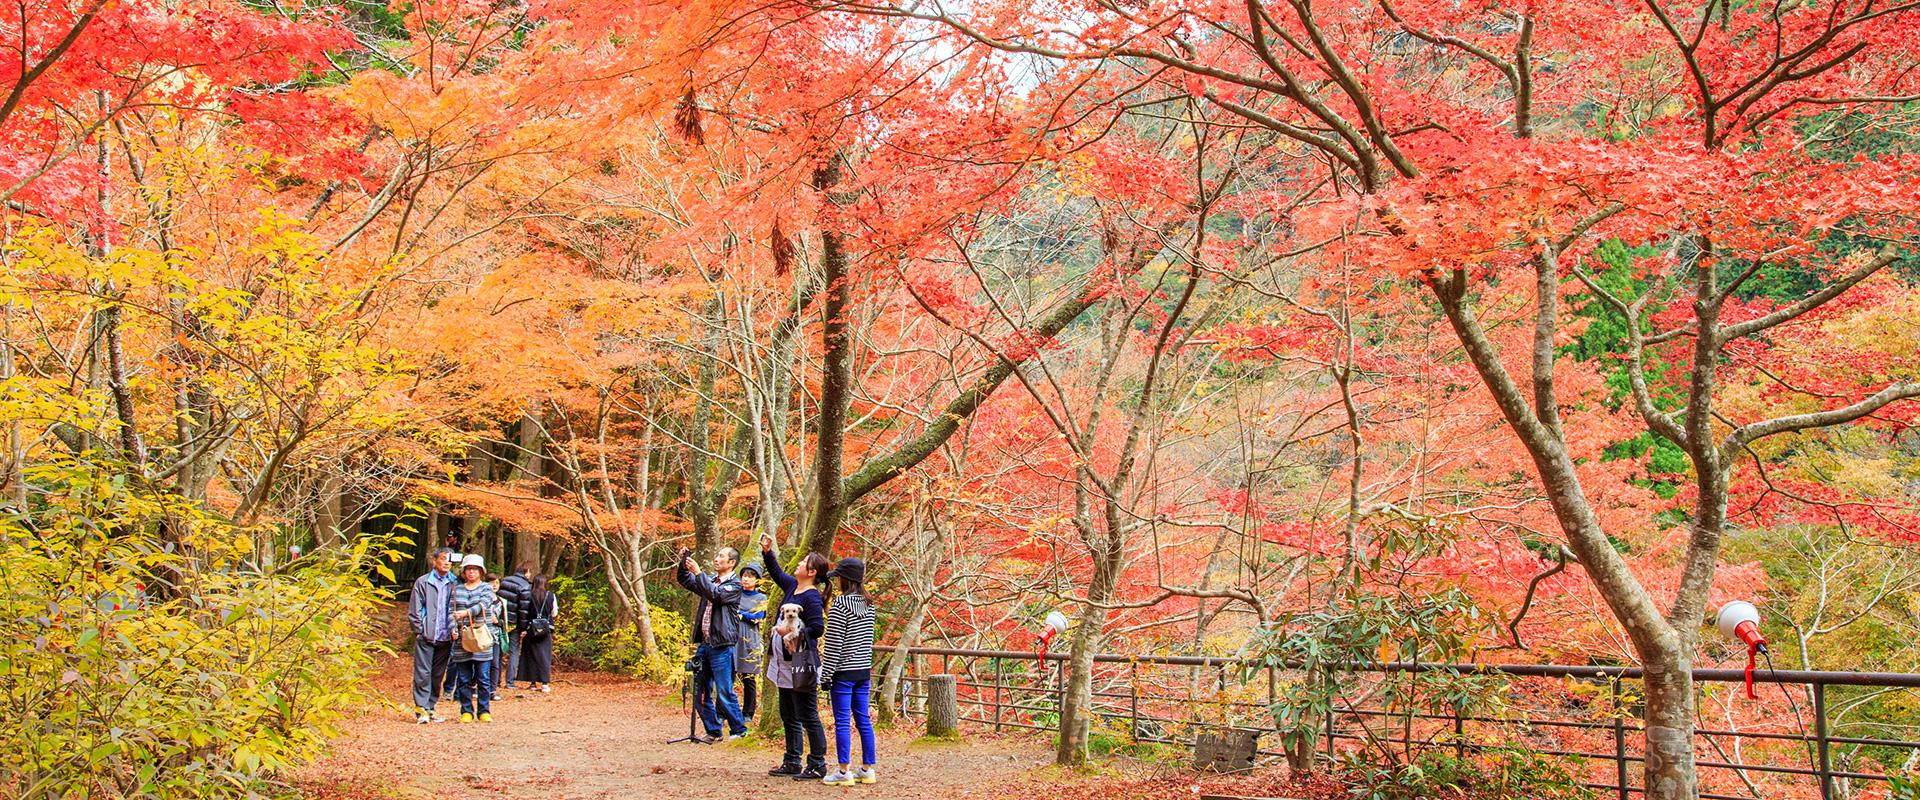 秋の岡山観光ガイド 9 11月 旬のおすすめ 特集 岡山観光web 公式 岡山県の観光 旅行情報ならココ